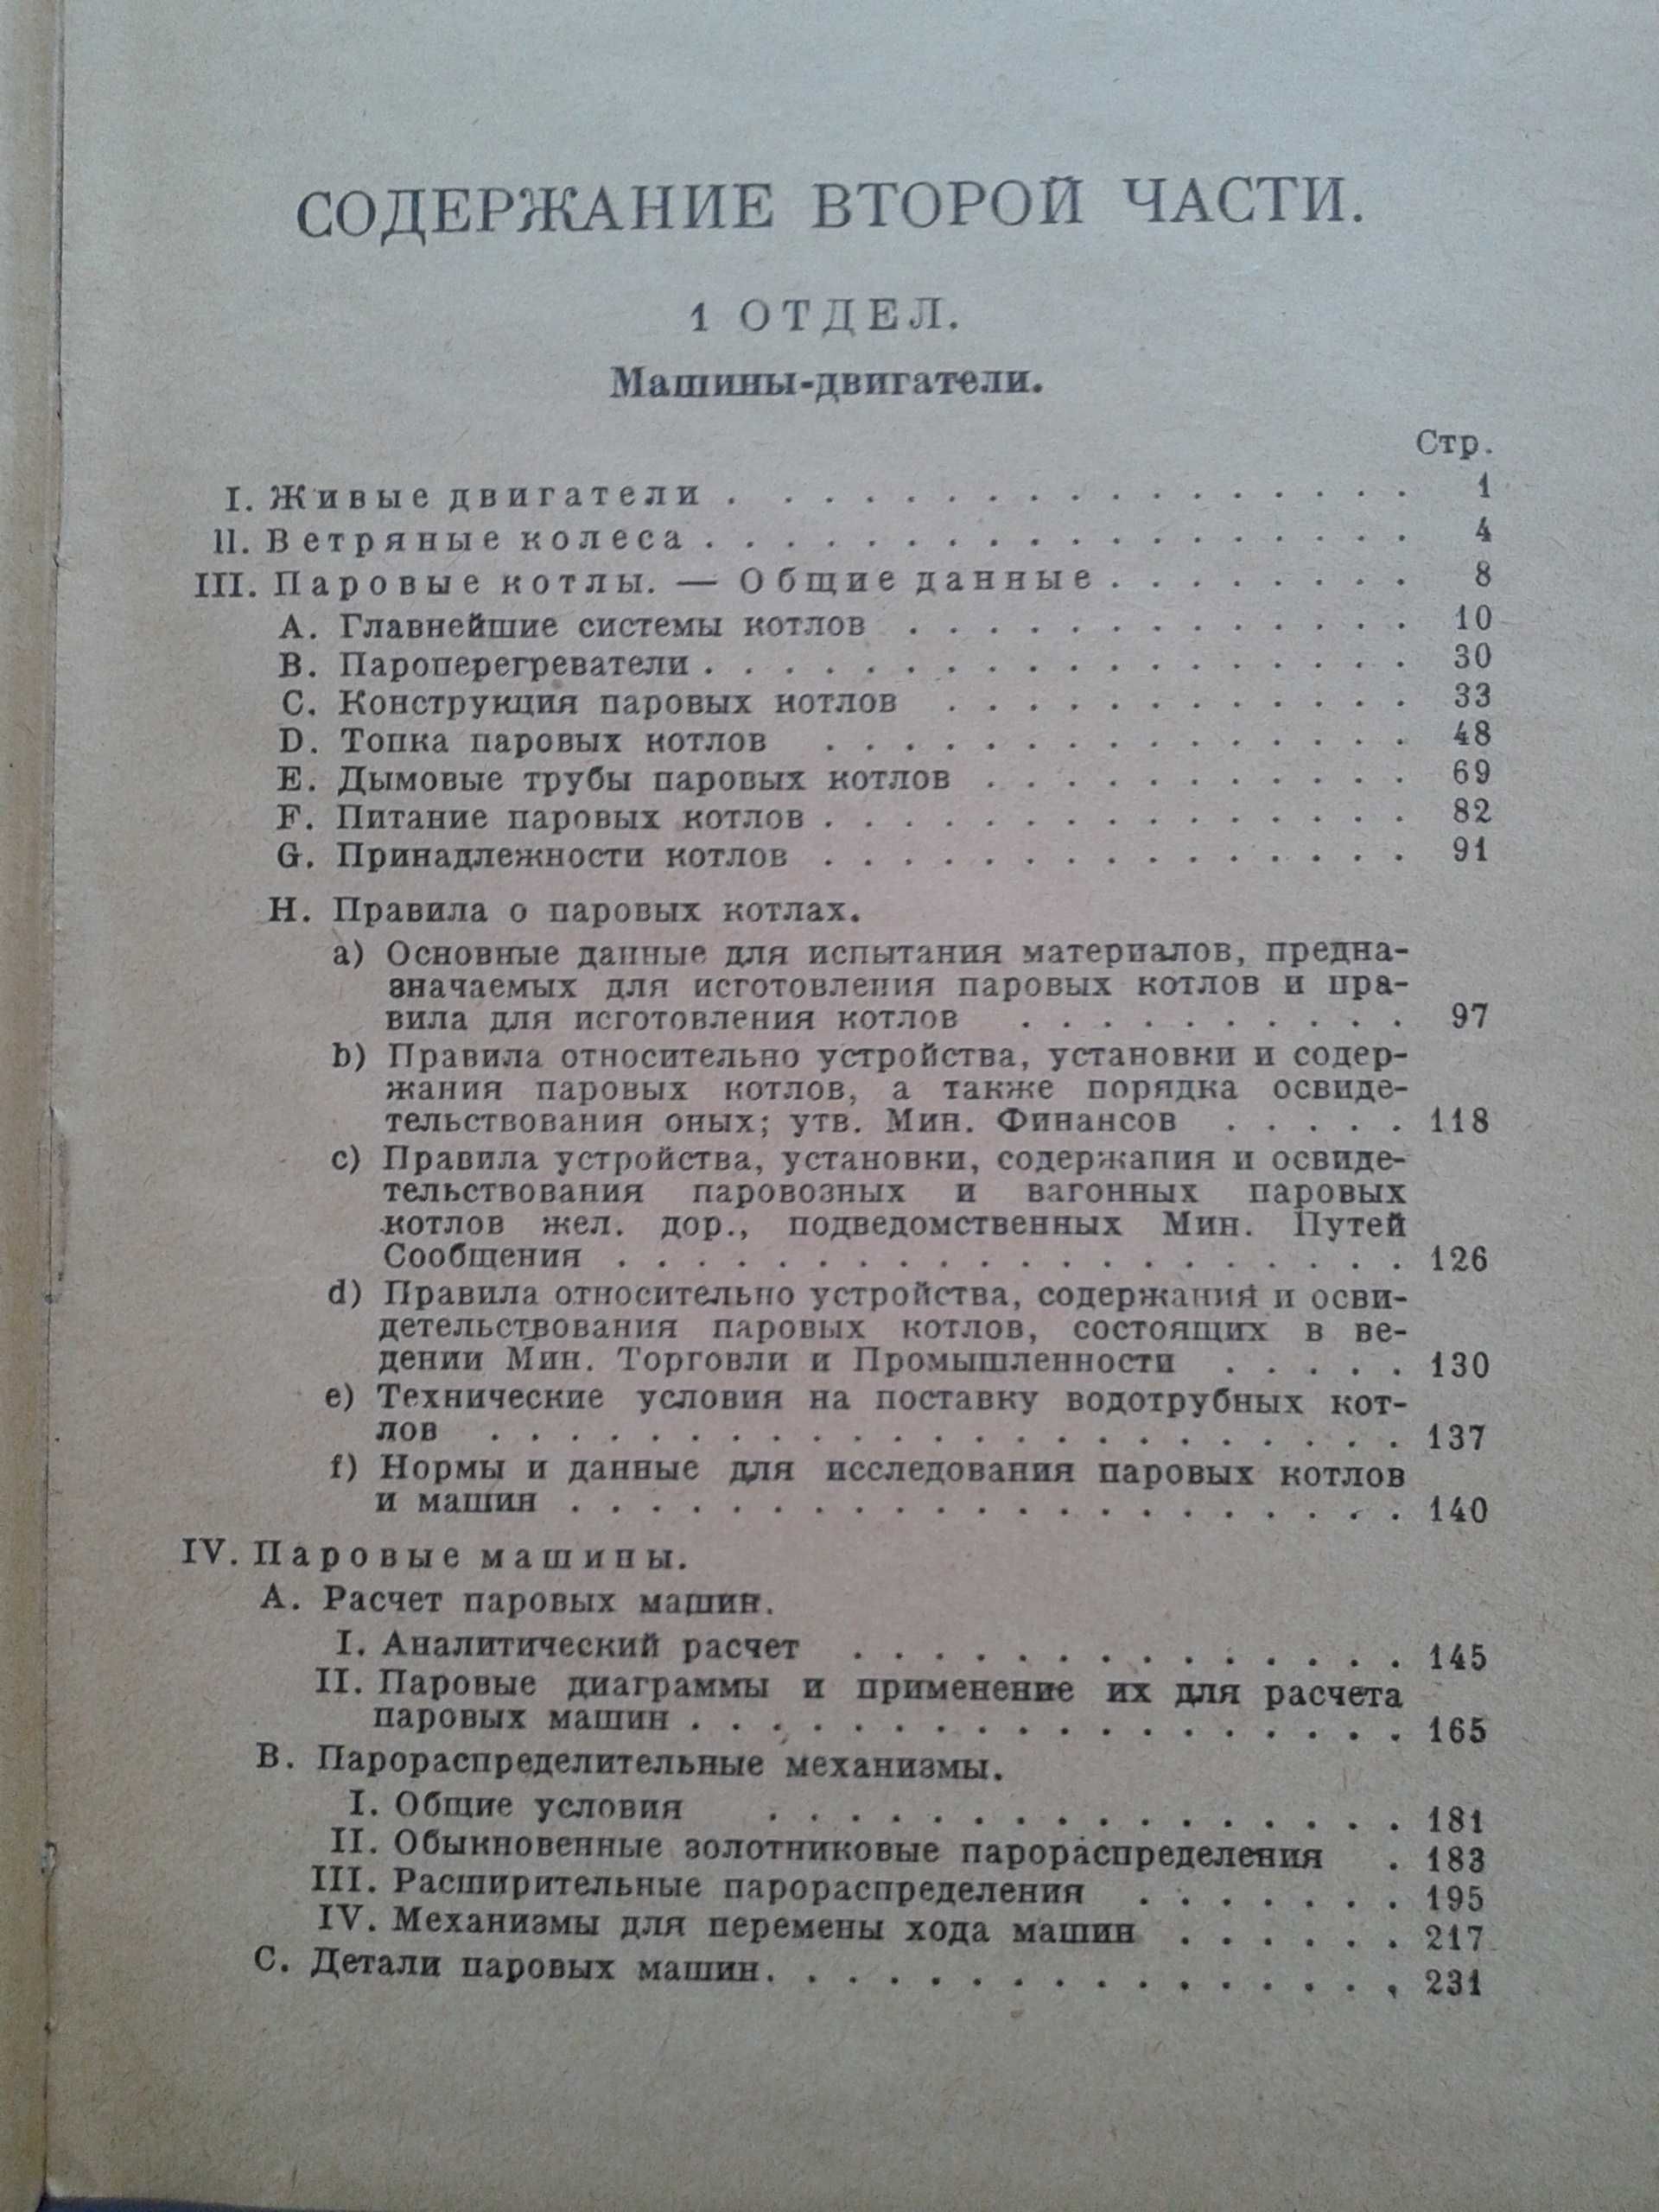 HUTTE, Справочная книга для инженеров Берлин, 1926 г – 3 тома